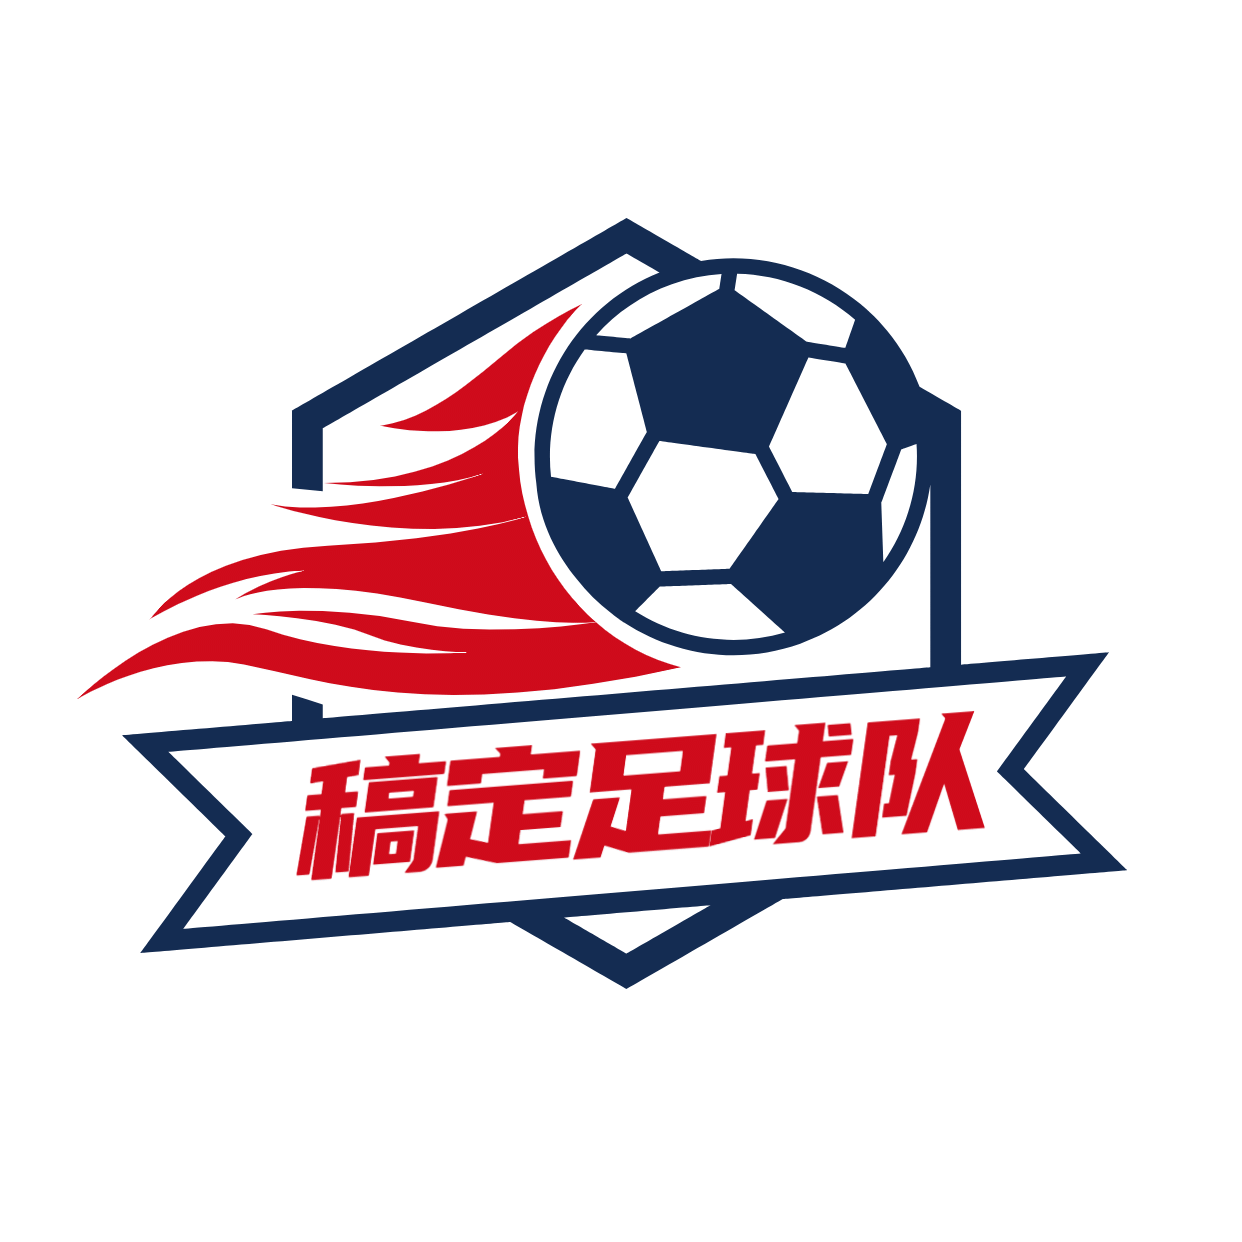 教育培训机构足球队头像logo